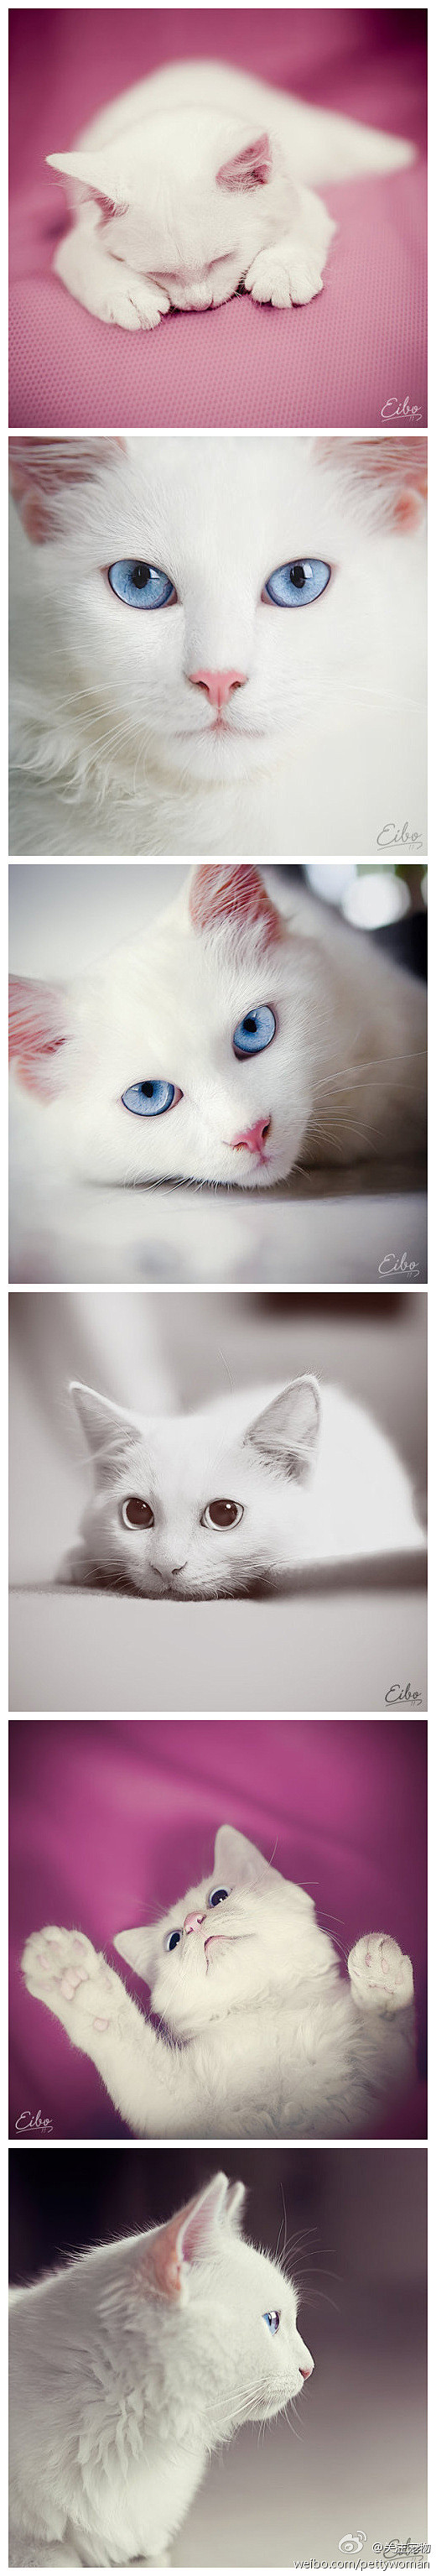 精致而高贵的猫！！蓝水晶一样的眼睛